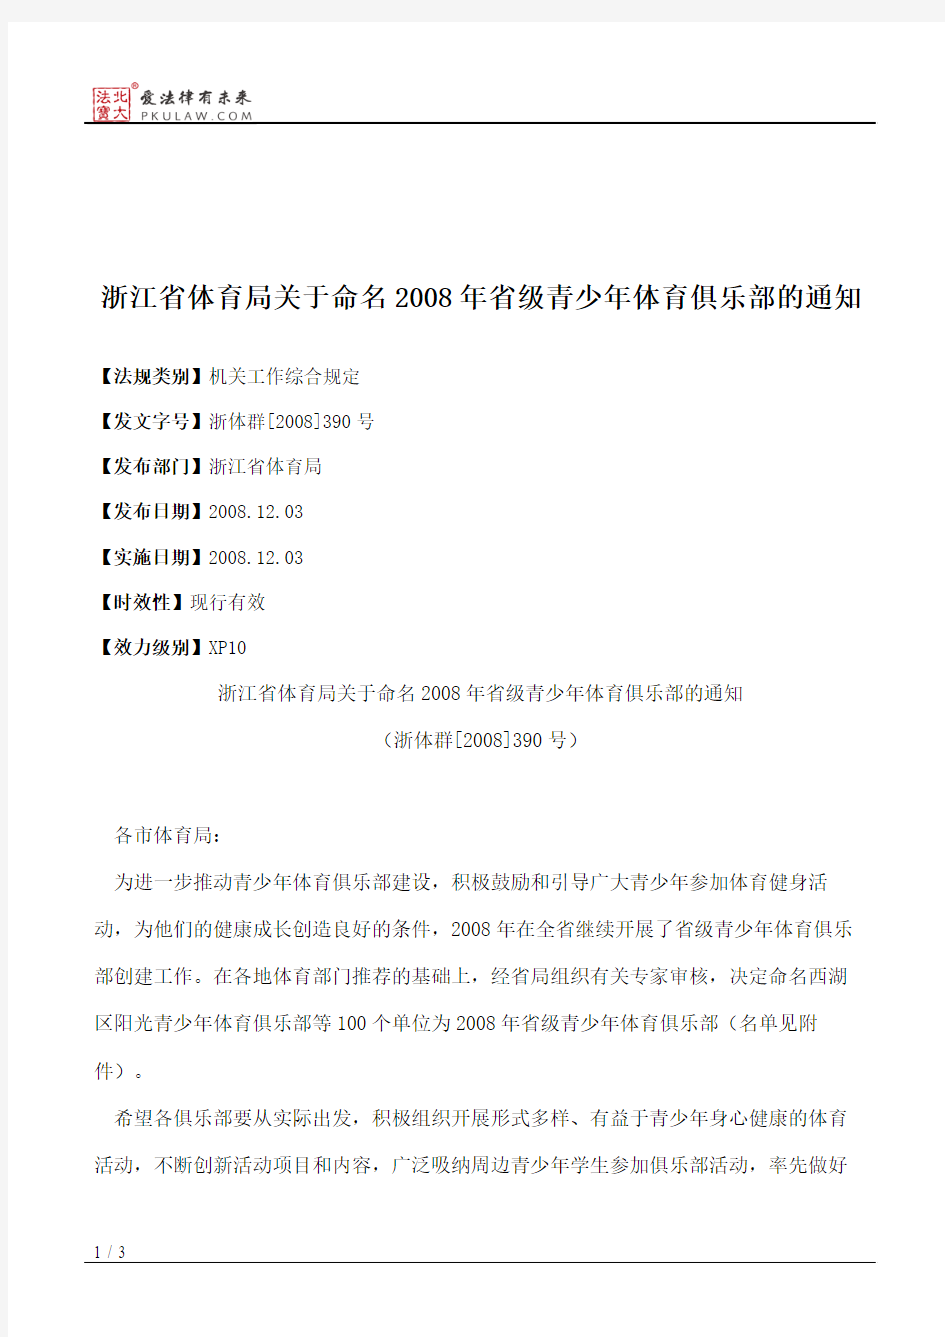 浙江省体育局关于命名2008年省级青少年体育俱乐部的通知